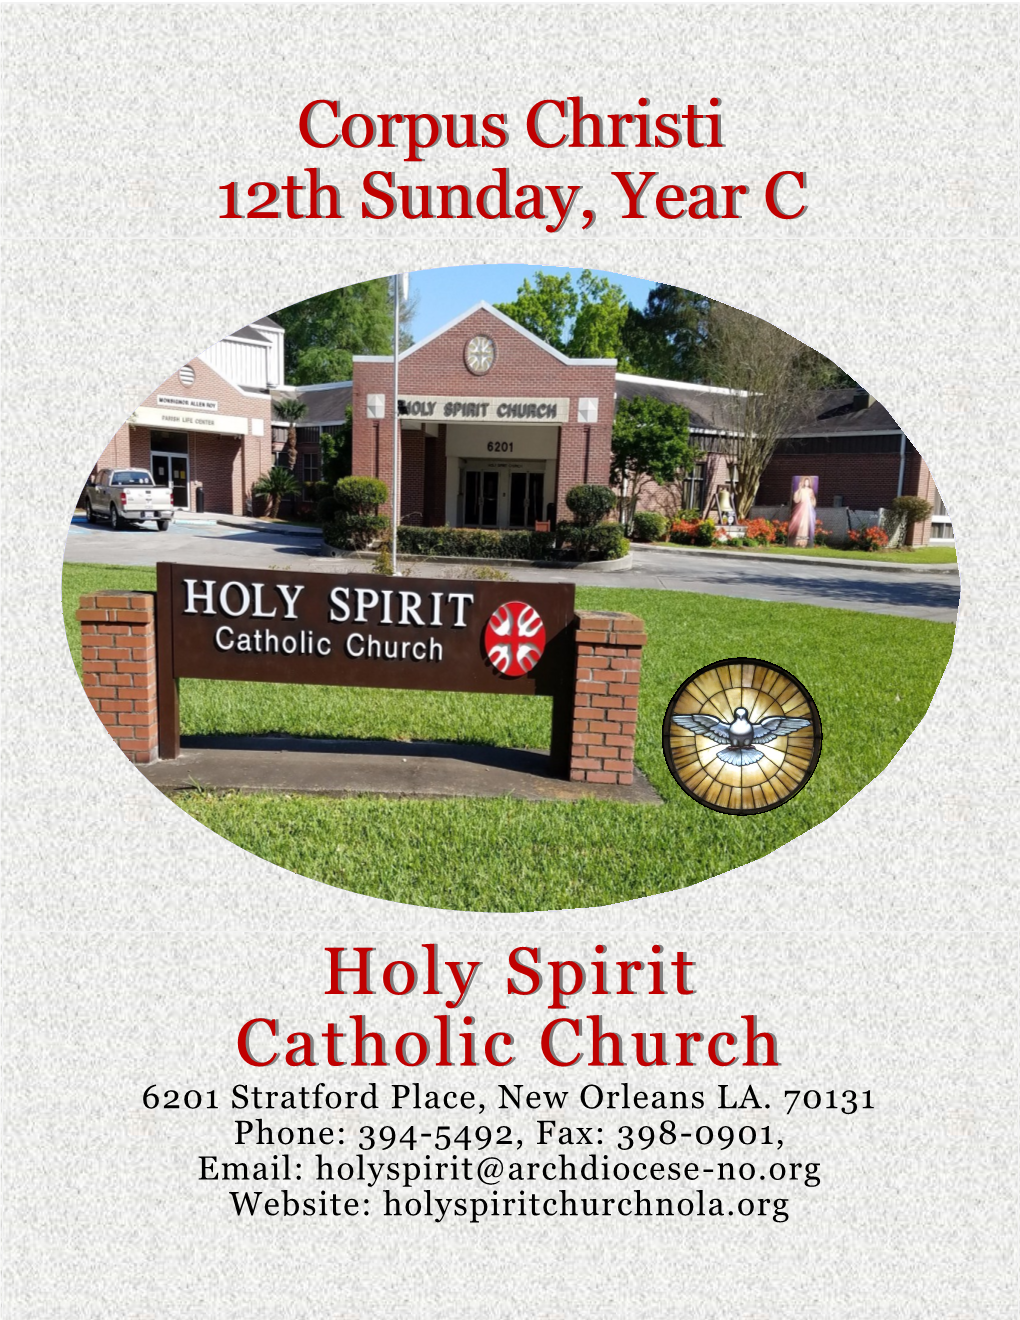 Holy Spirit Catholic Church Corpus Christi 12Th Sunday, Year C